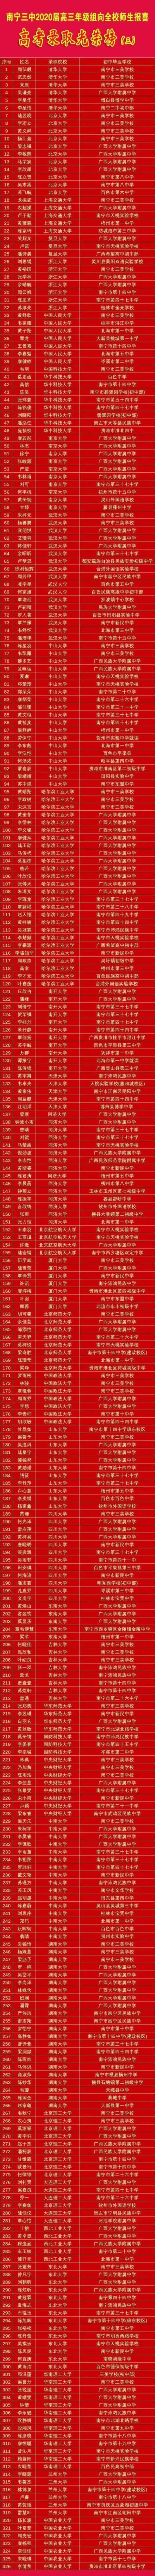 喜报!2020年南宁三中名校录取人数300+ 学霸们初中读这35所学校!